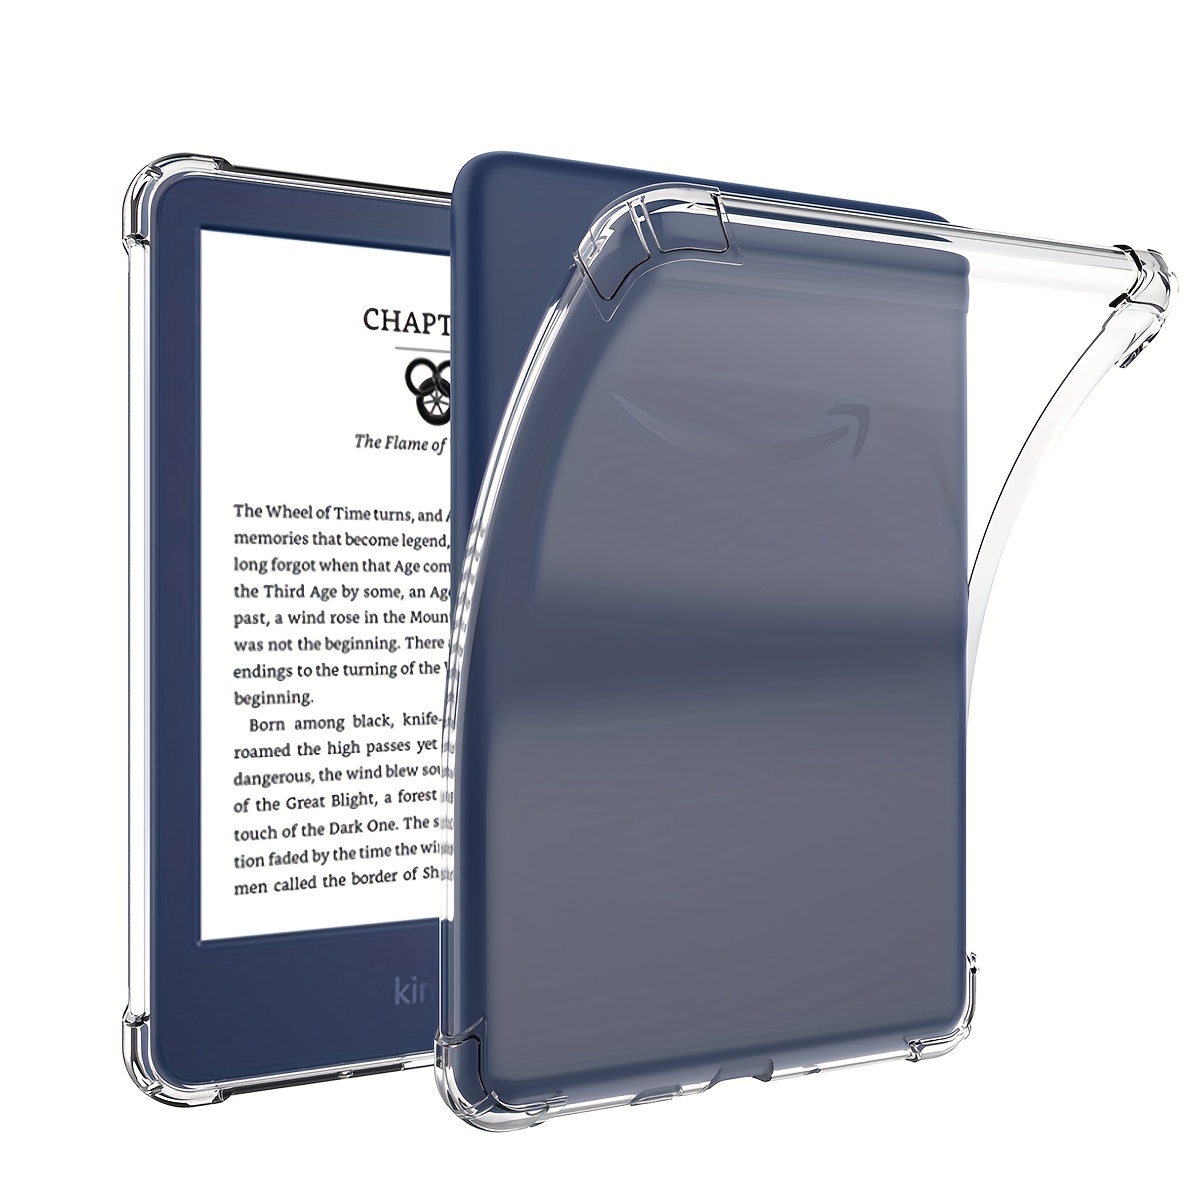 WALNEW Funda para Kindle Paperwhite de 6.8 de 11ª generación 2021 - Funda  de piel sintética ligera de alta calidad con encendido y apagado automático